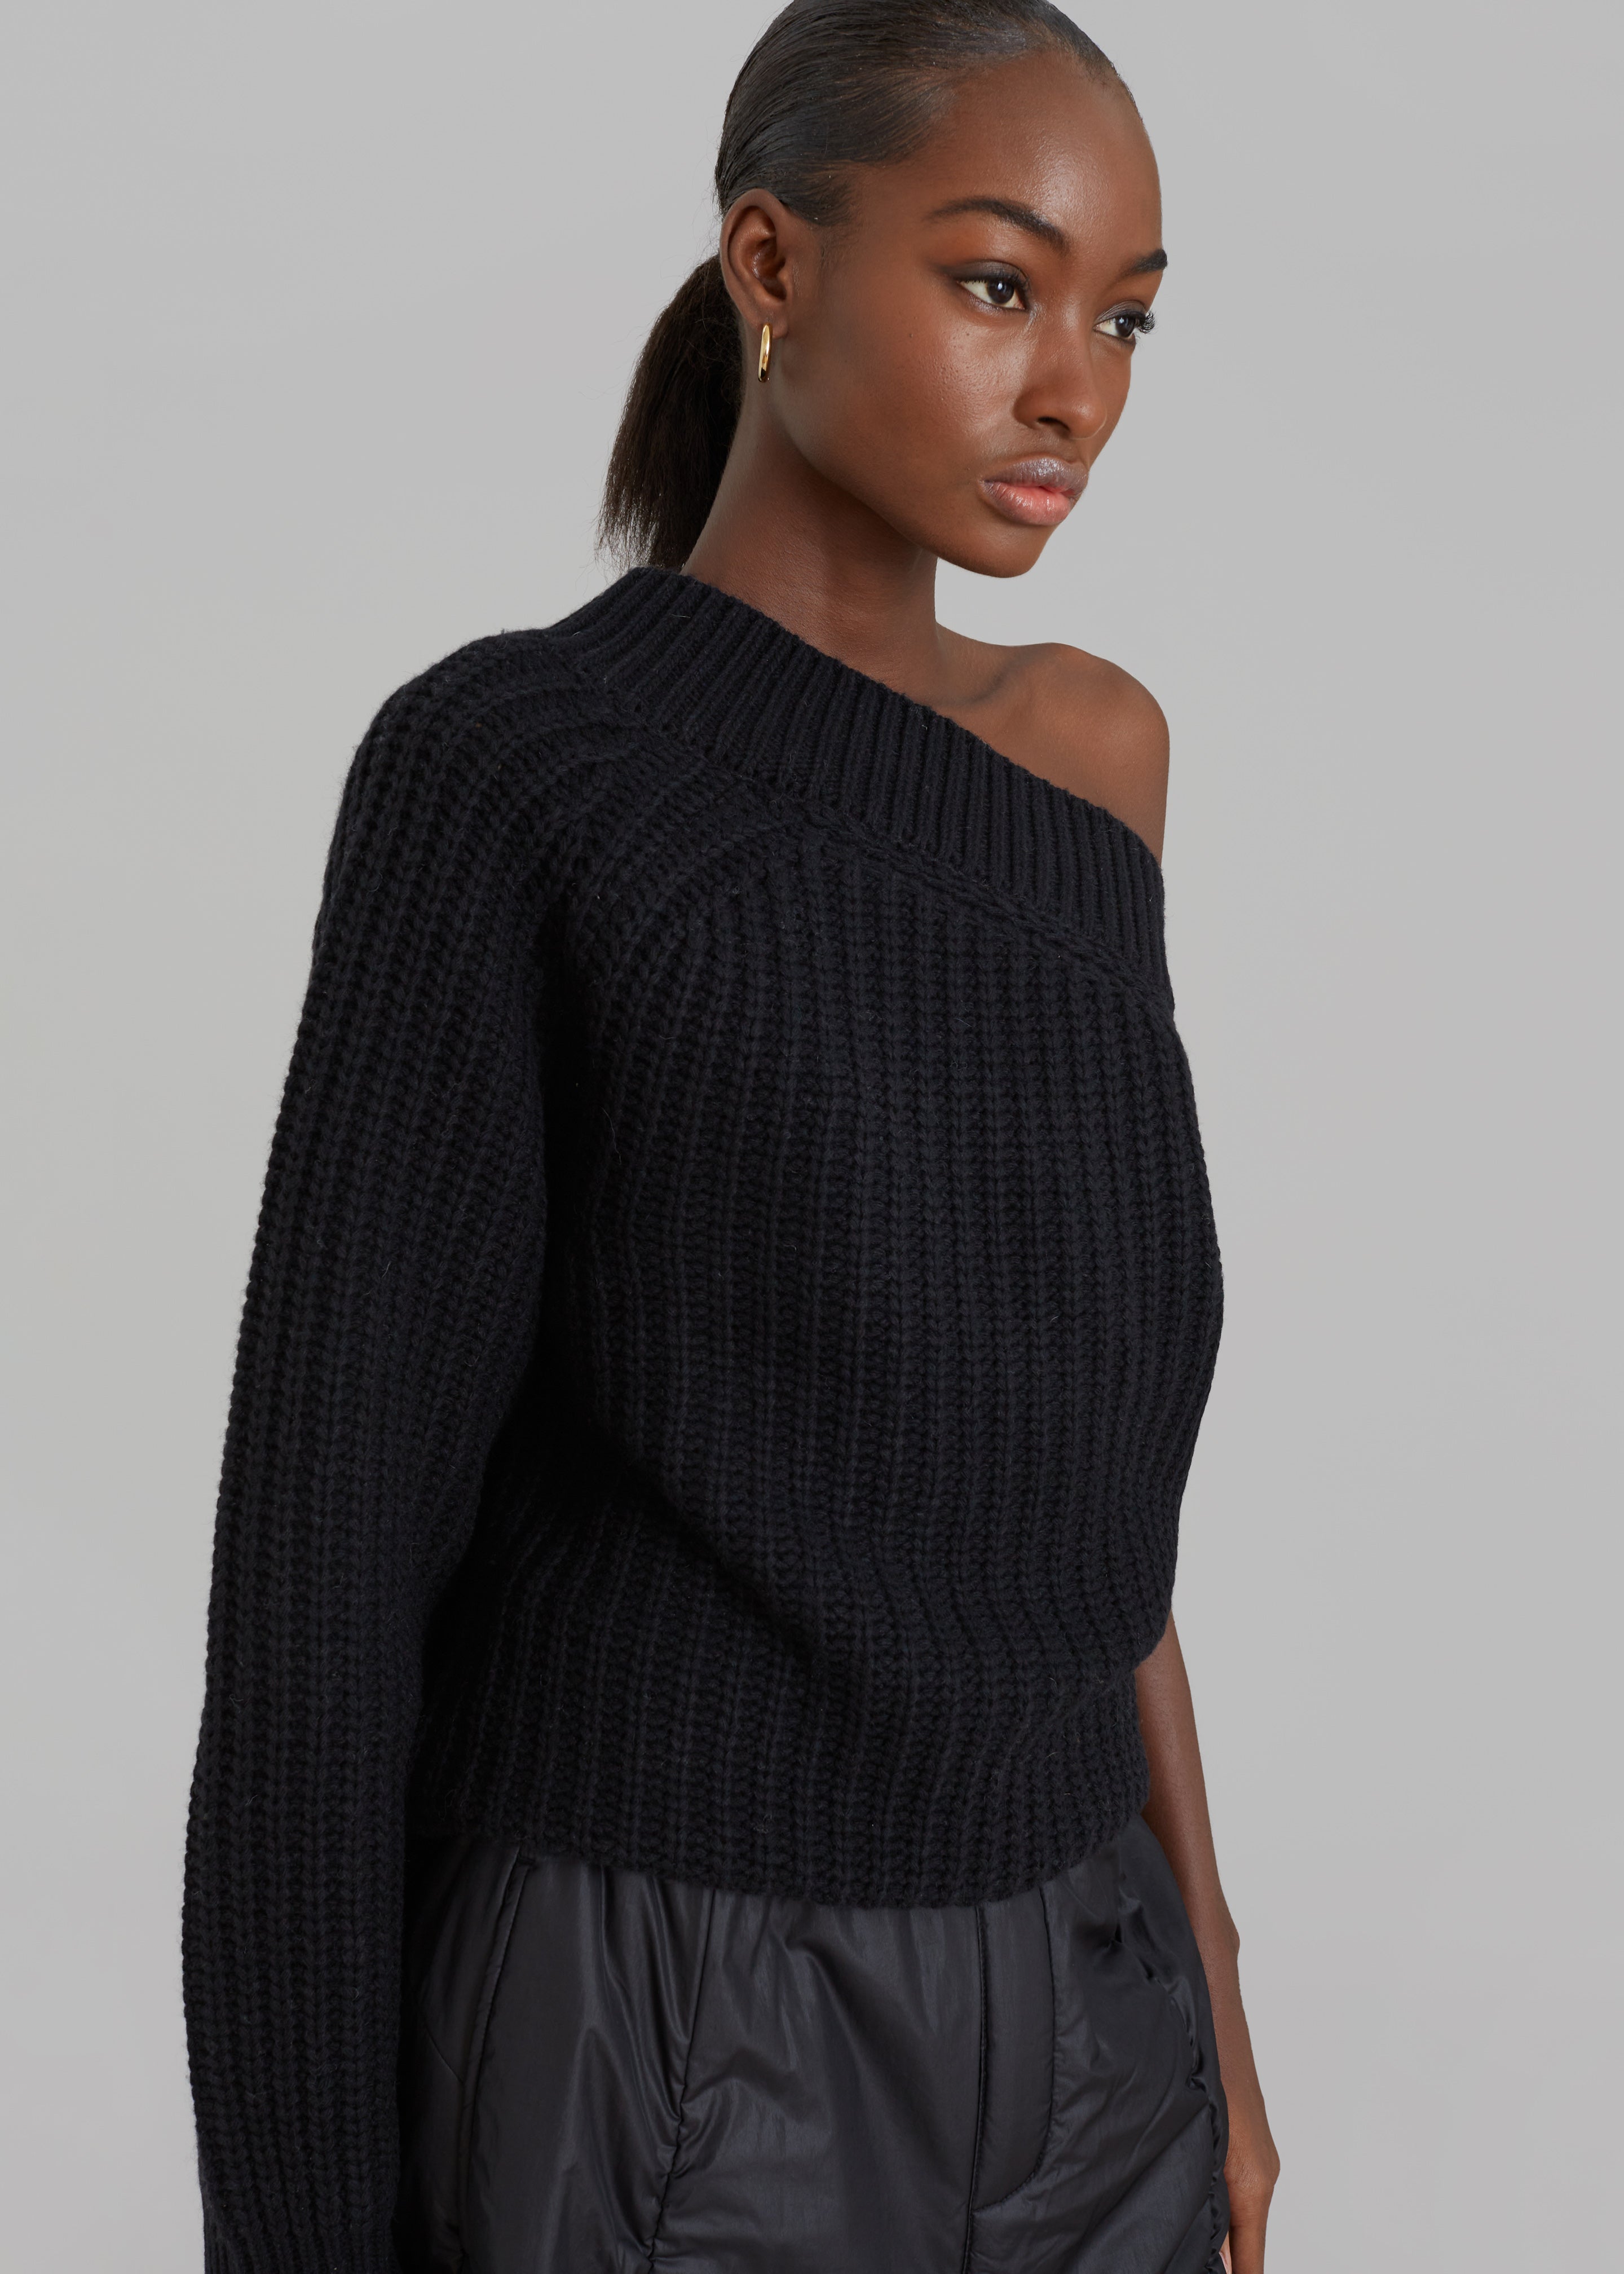 Women's Knitwear, Sweaters & Turtleneck – The Frankie Shop